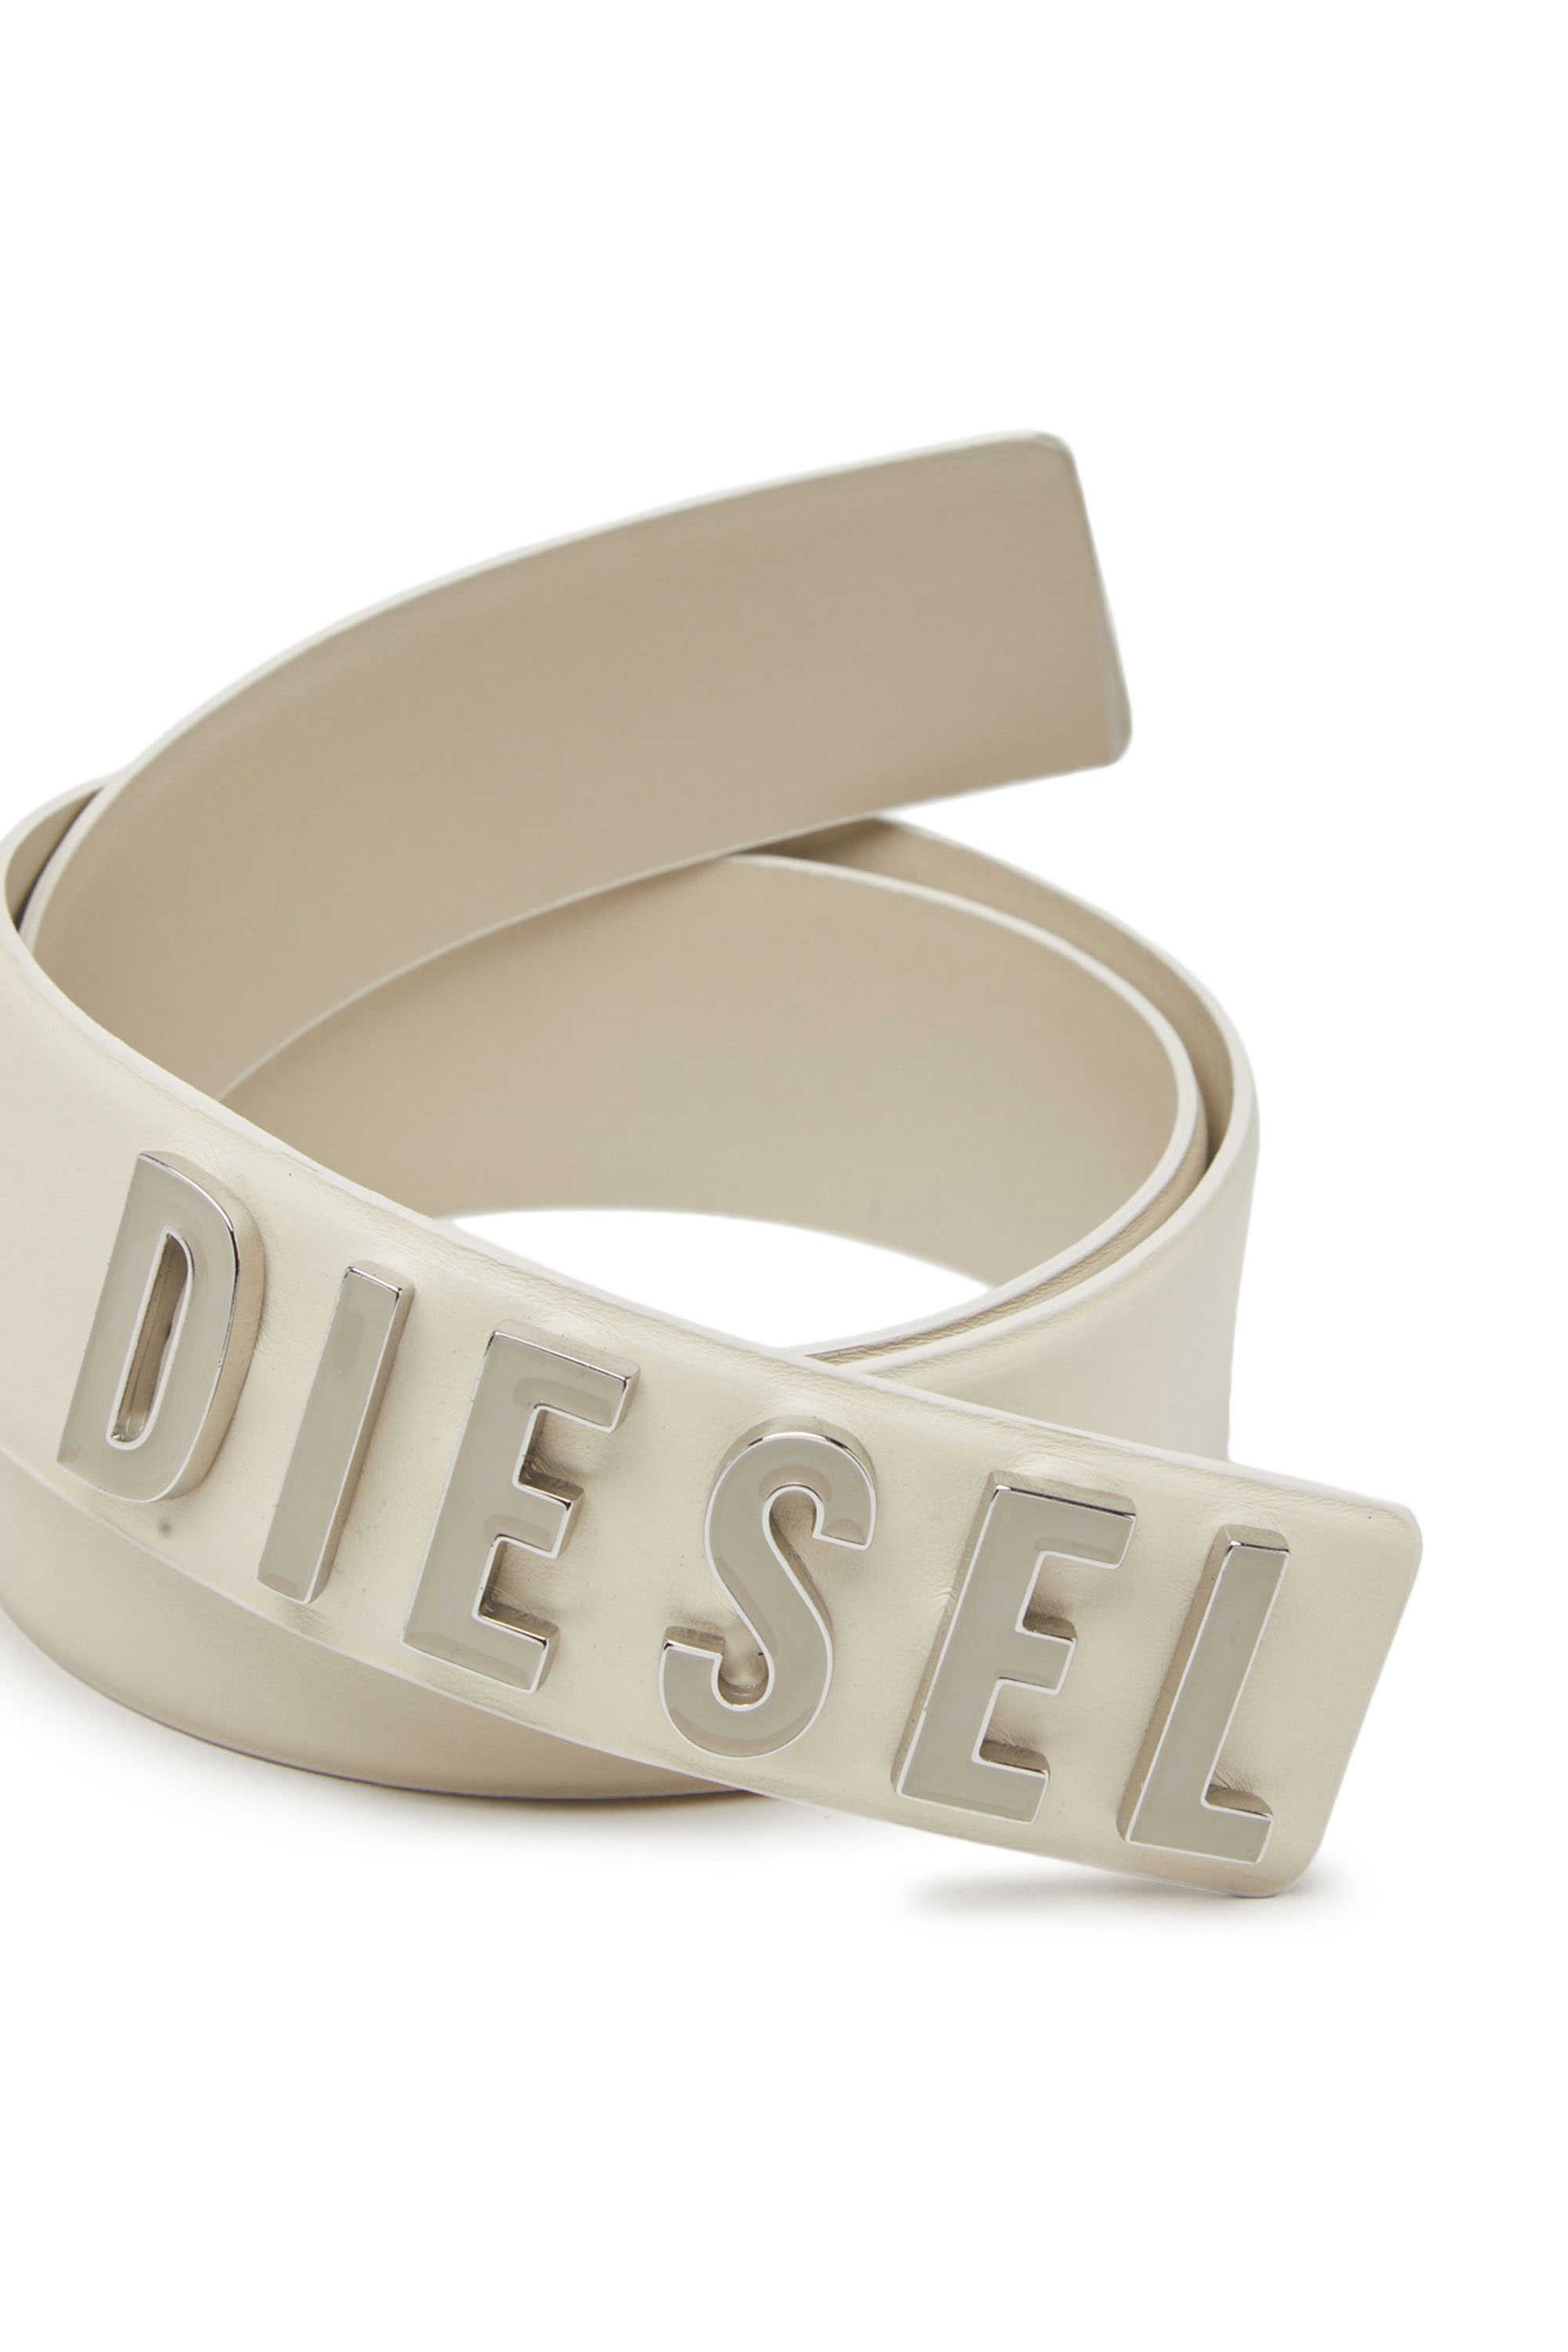 Diesel - B-LETTERS B, Blanco - Image 3